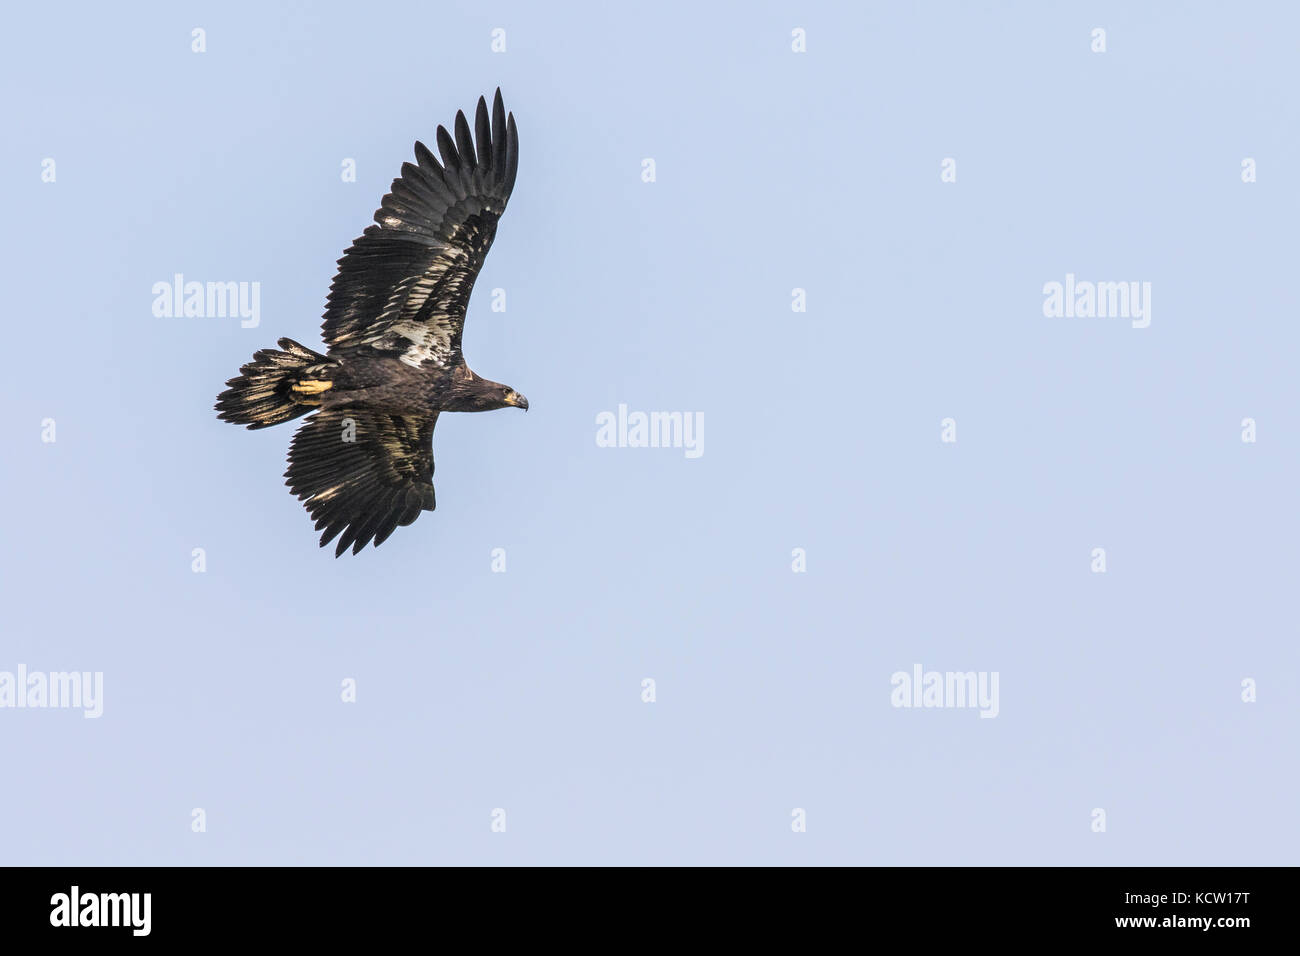 Aquila reale (Aquila chrysaetos) piena apertura alare, come aquila vola in cerca di cibo, Cranbrook, British Columbia, Canada Foto Stock